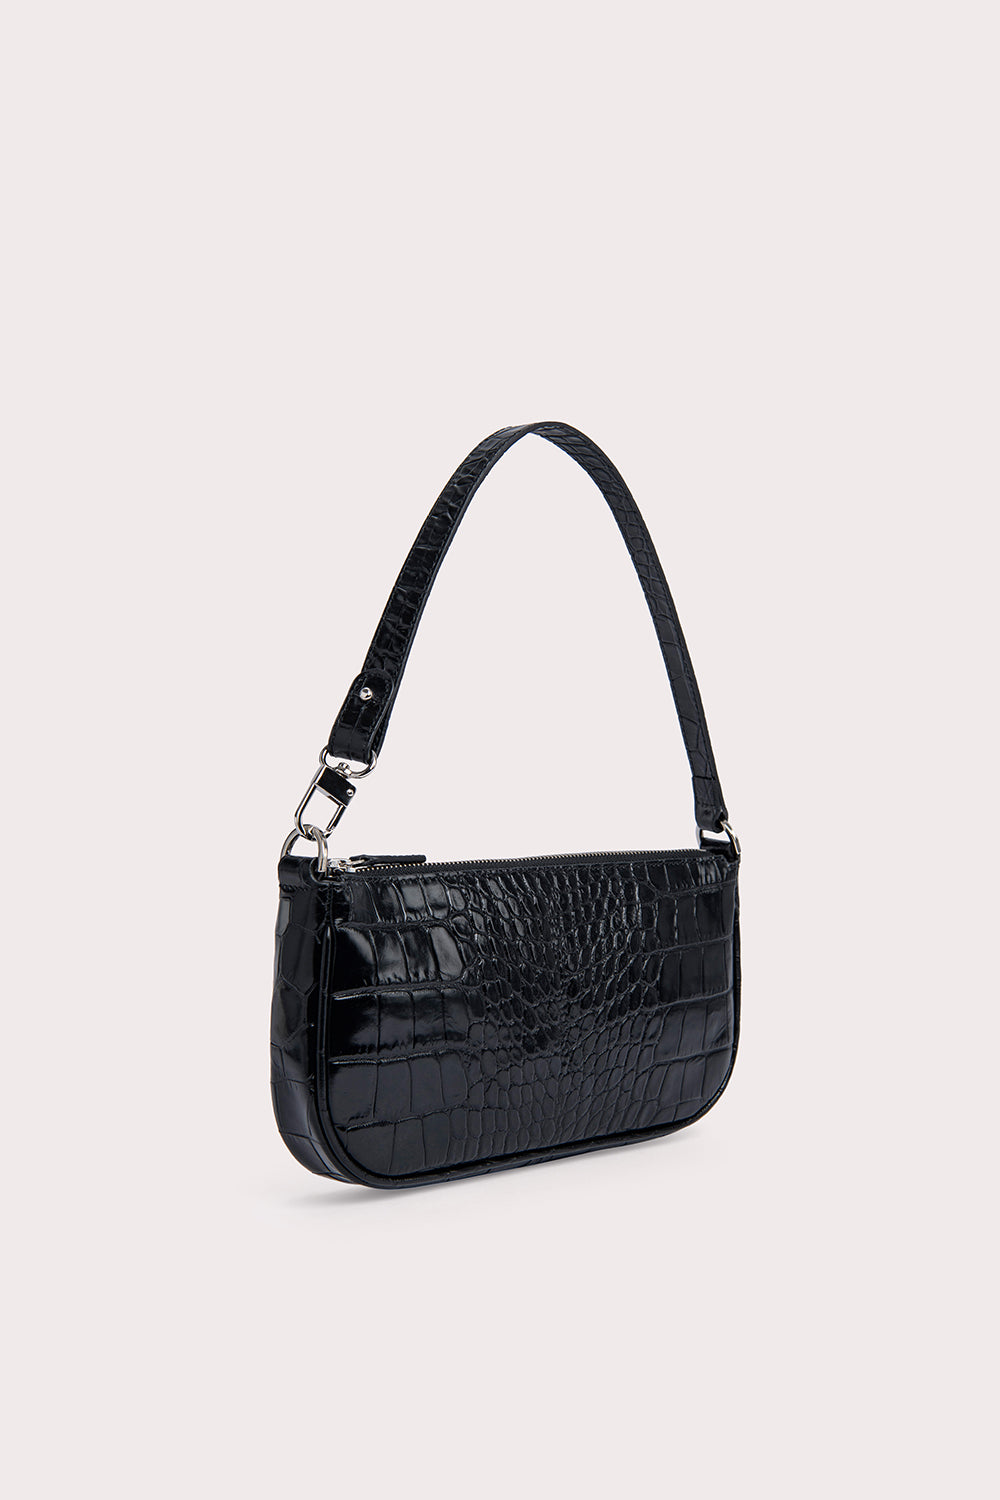 Rachel leather mini bag By Far Beige in Leather - 17146460